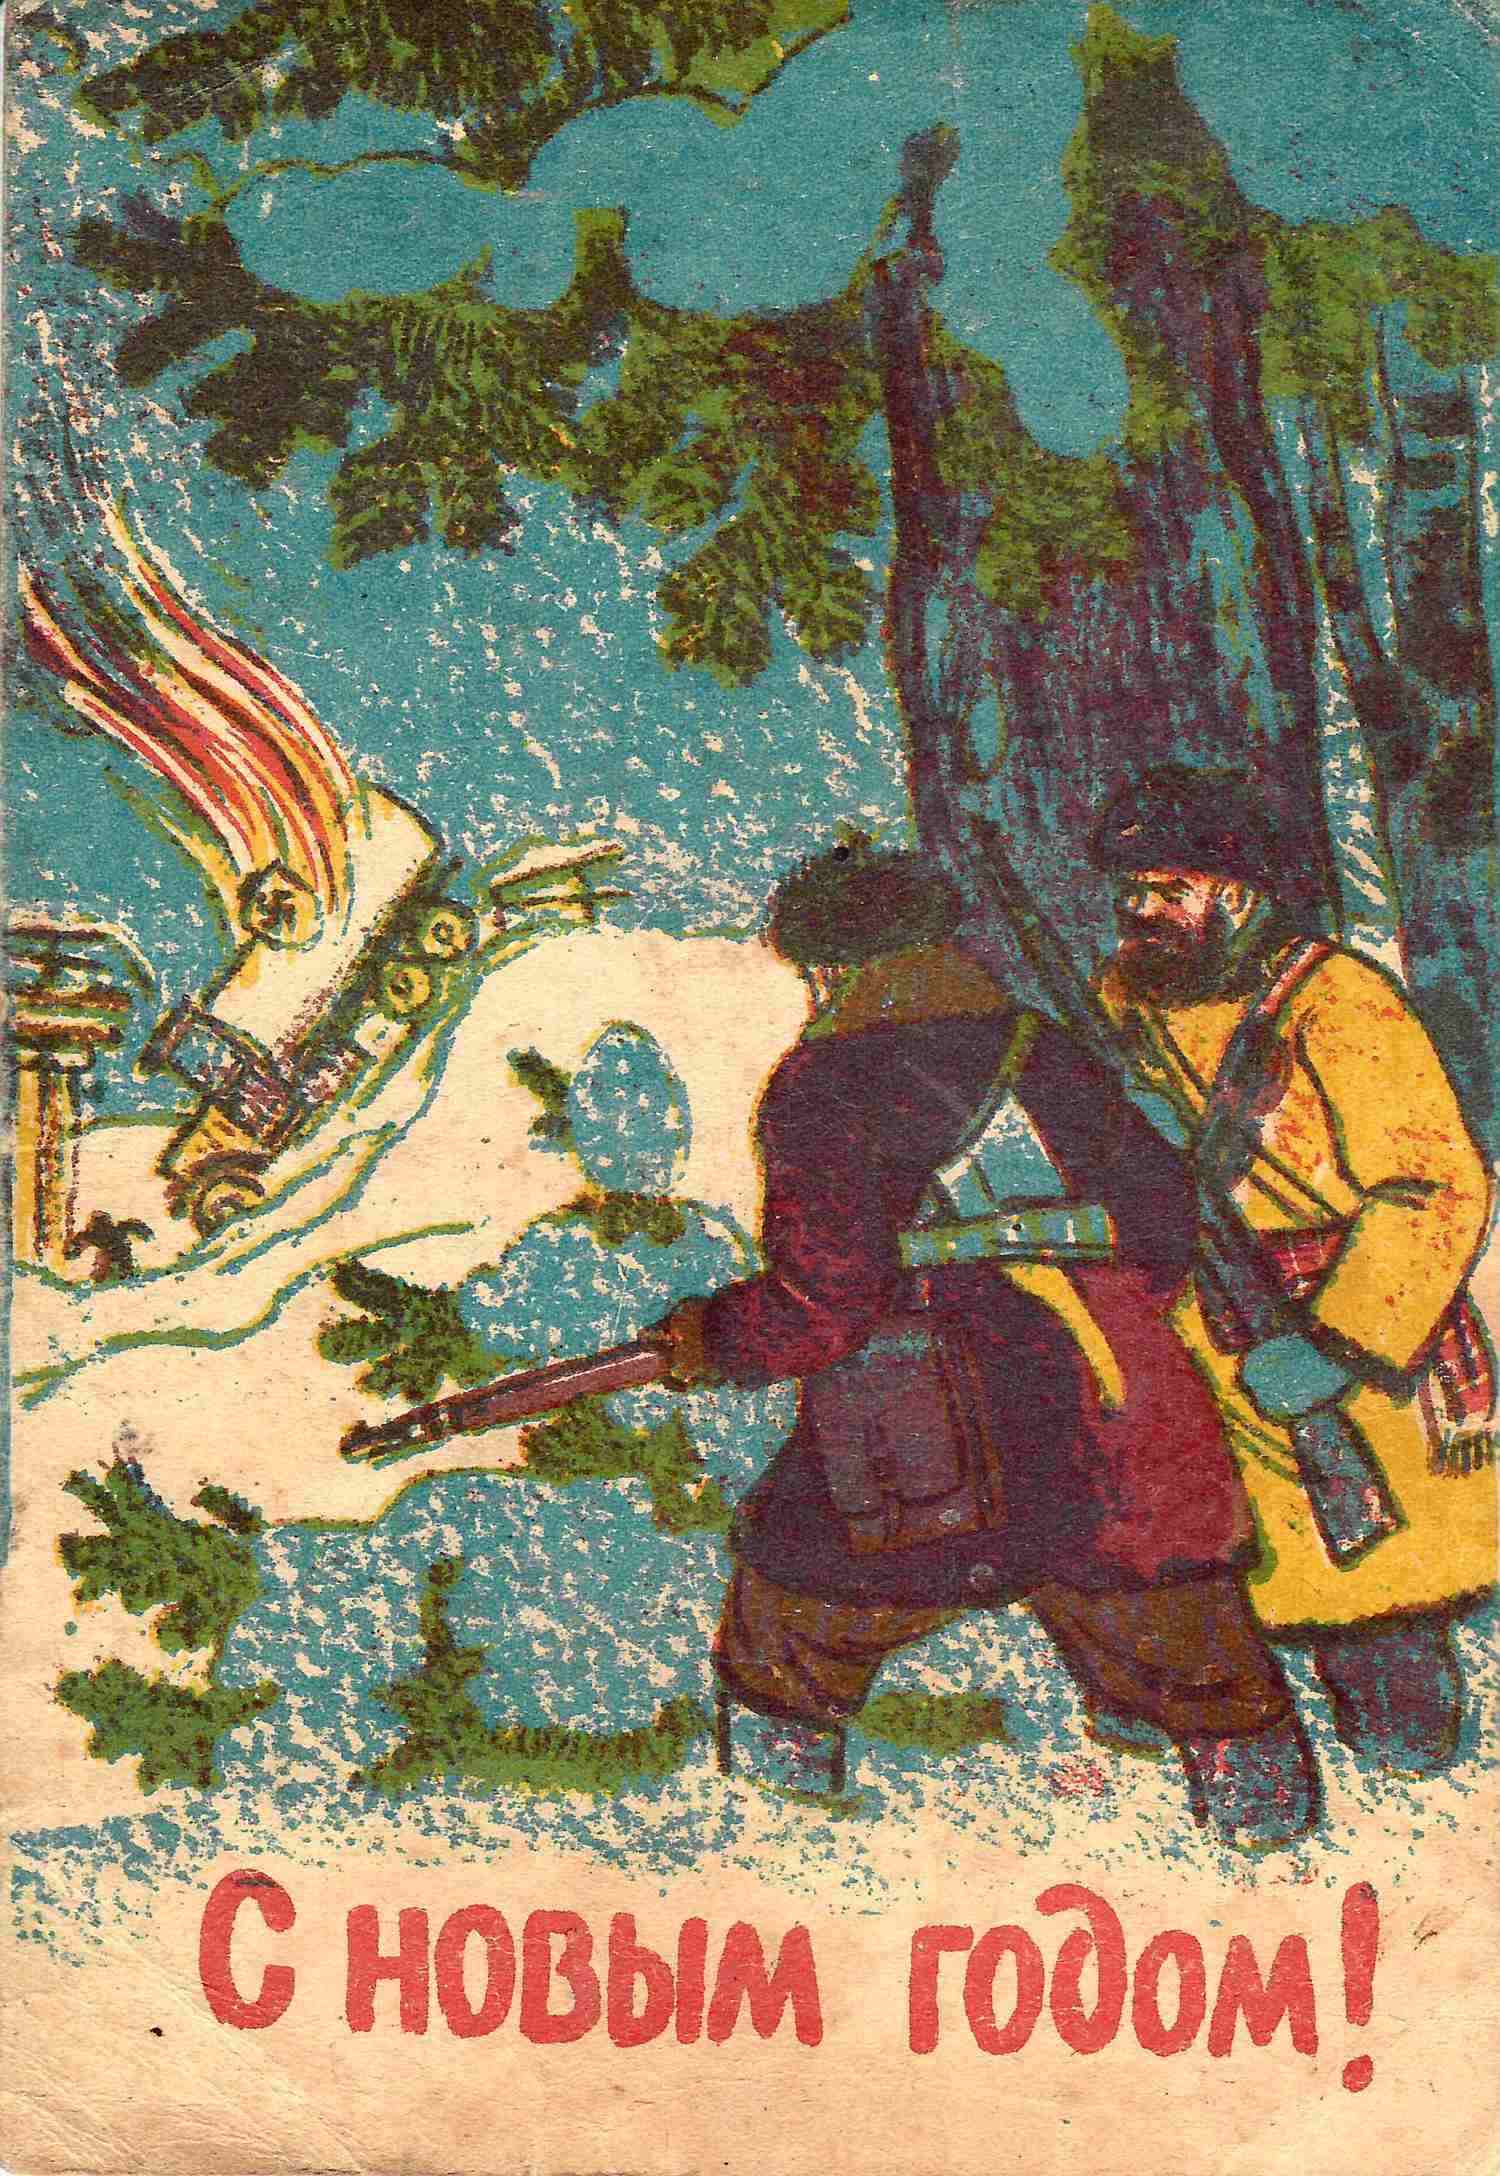 2 художественные новогодние поздравительные открытки. СССР, 1940-е годы.